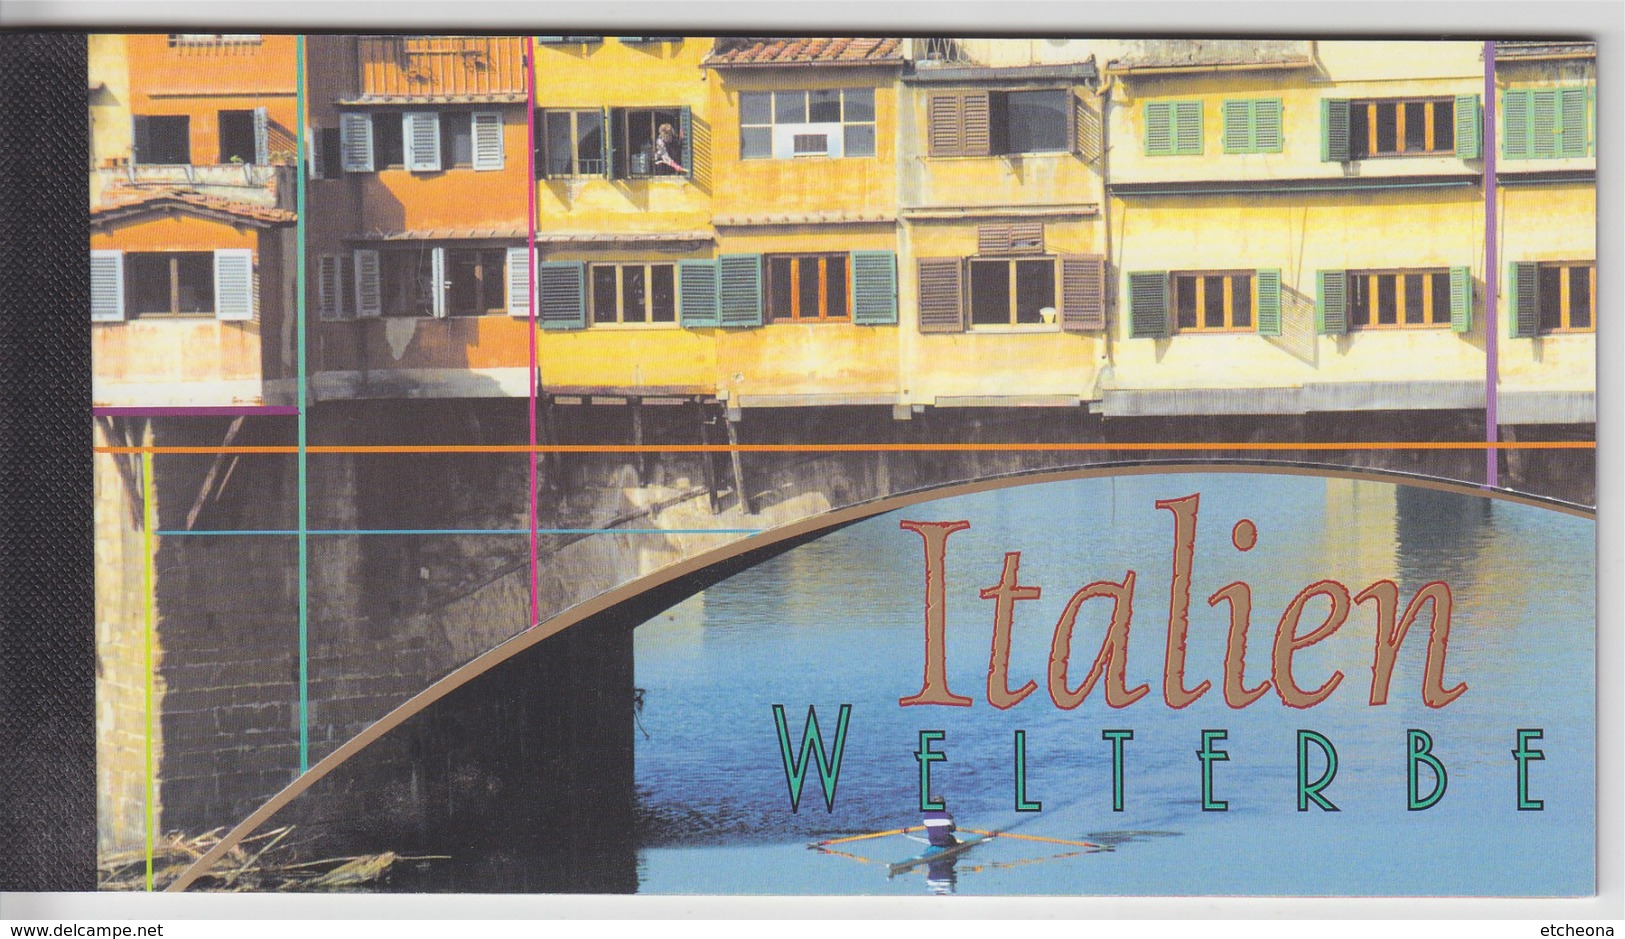 = Carnet Italie Patrimoine Mondial Amalfi Rome Florence Pise Pompéi Îles Eoliennes C386 état Neuf Nations Unies Vienne - Postzegelboekjes